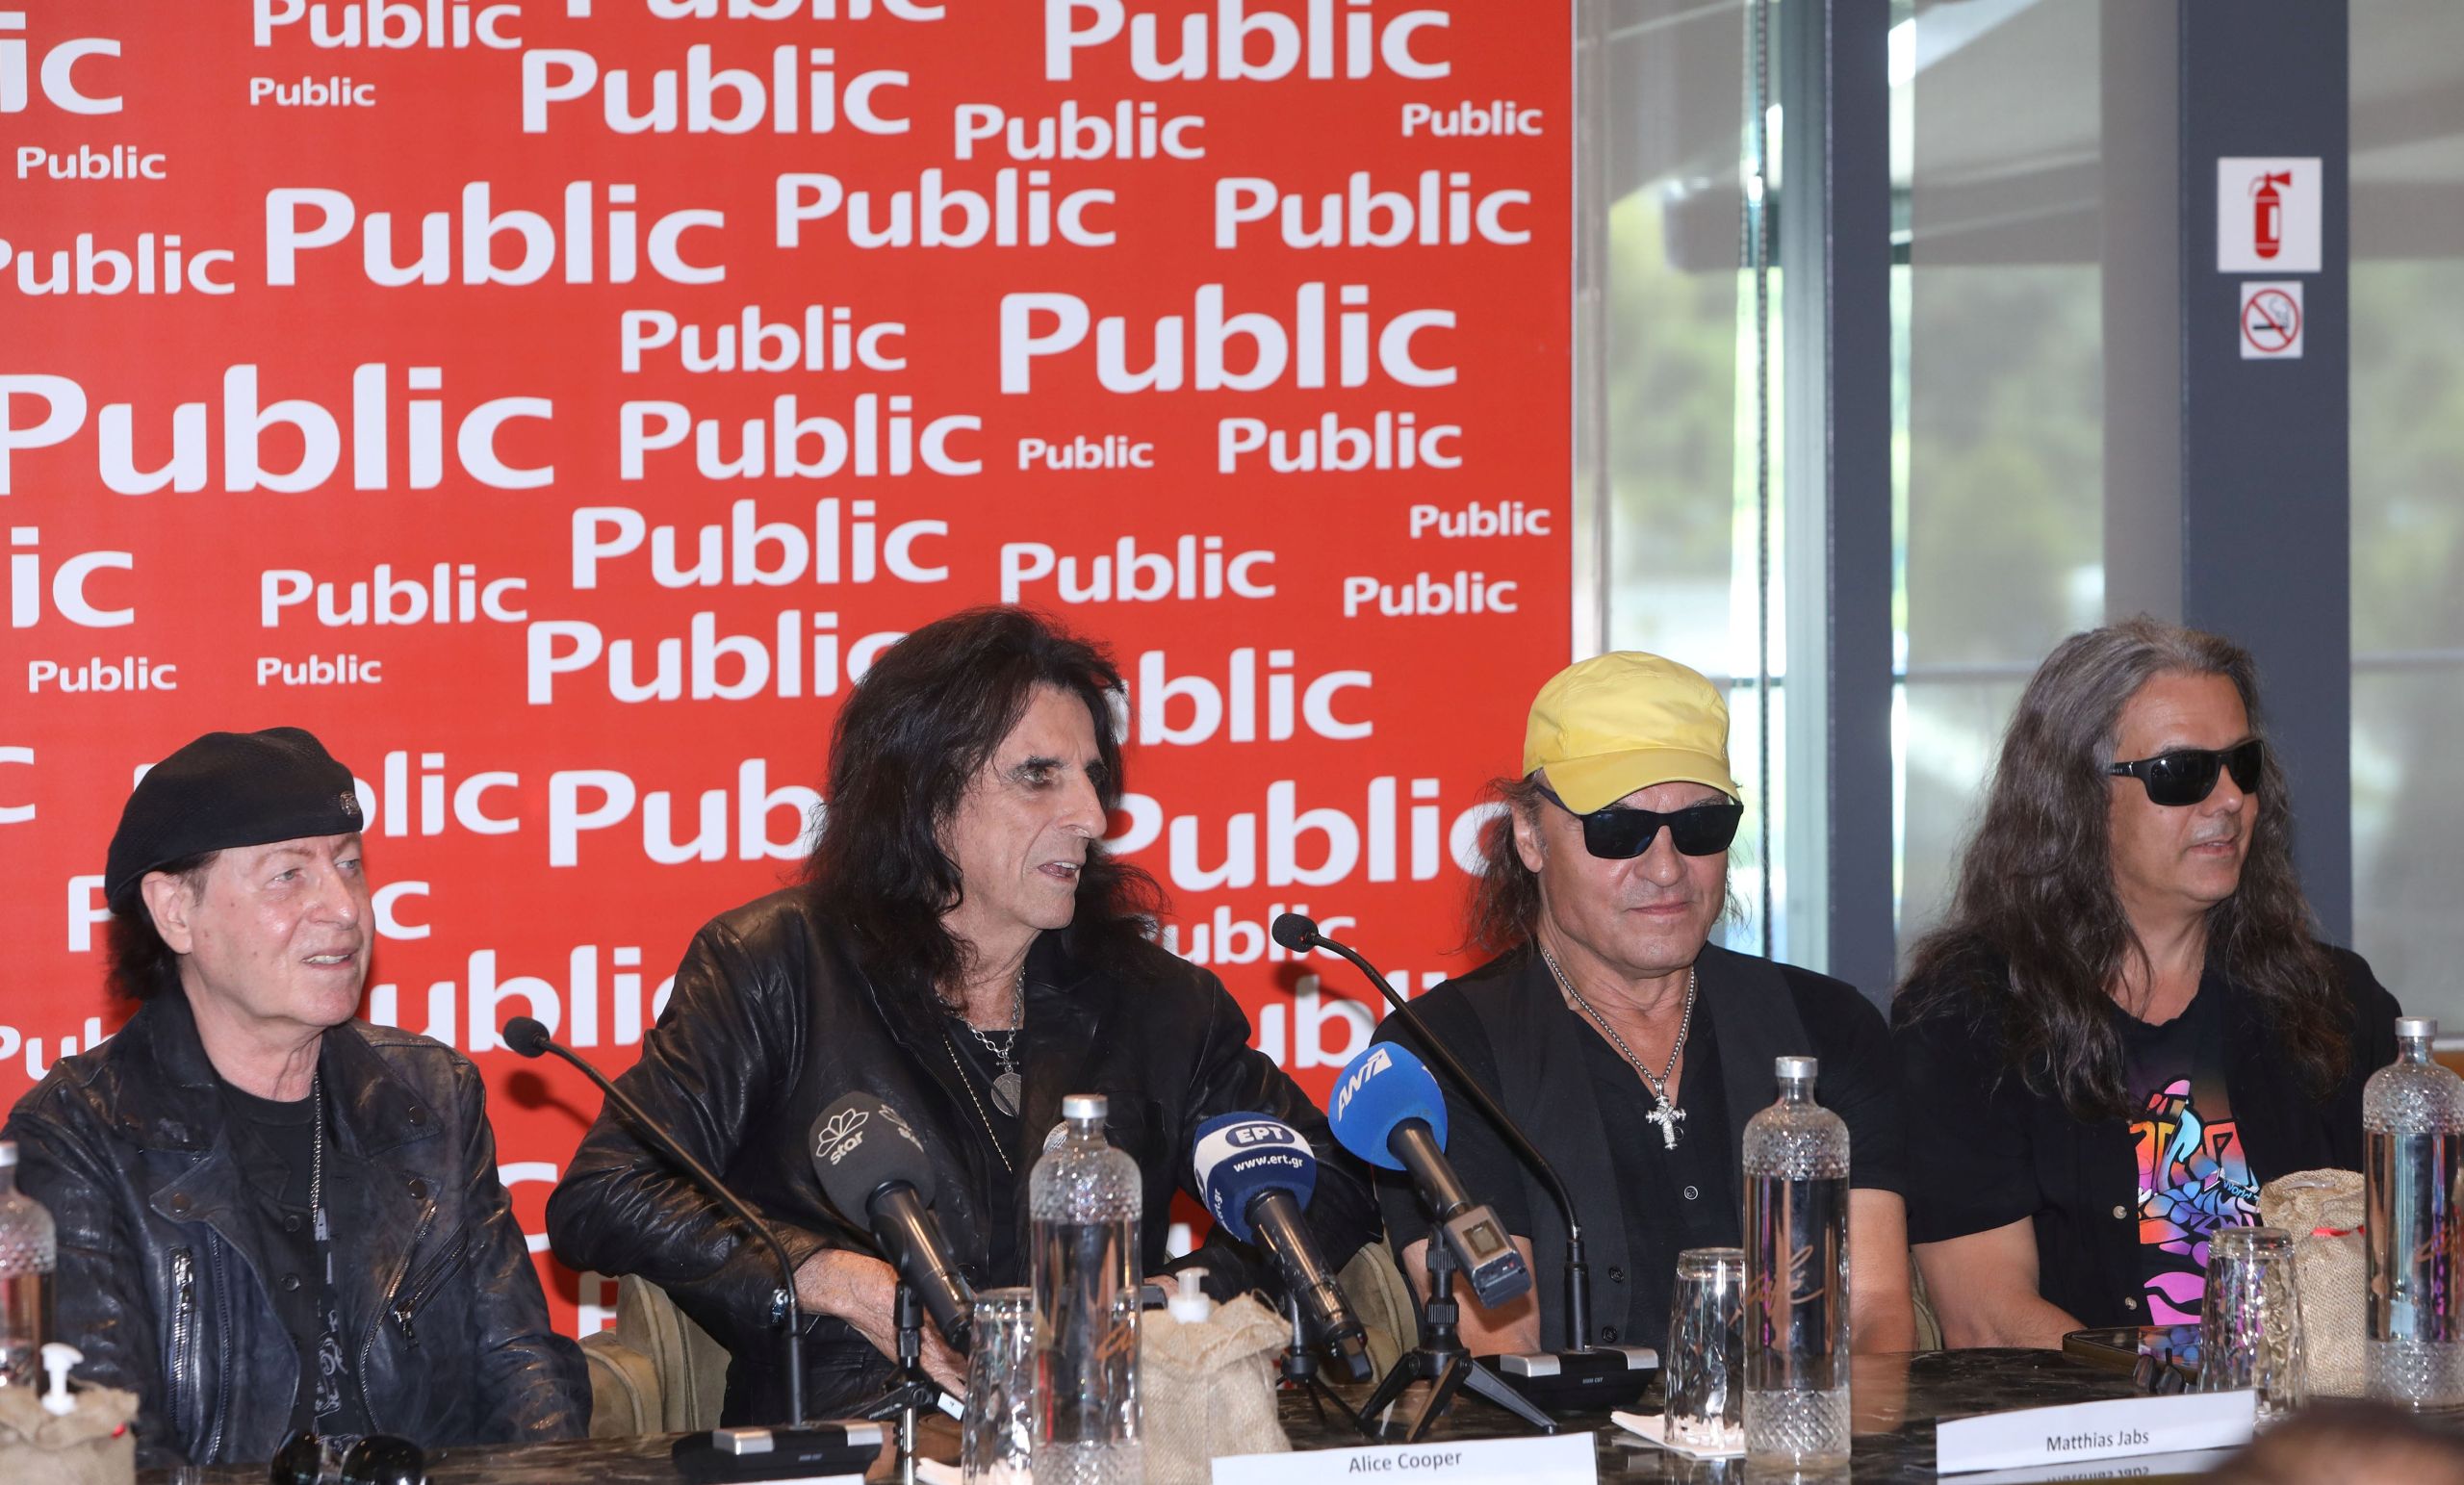 Οι Scorpions και ο Alice Cooper βρέθηκαν στα Public και έδωσαν μία εφ' όλης της ύλης συνέντευξη τύπου. Φωτογραφία: Νικολαρέας Ανδρέας/NDP Photo